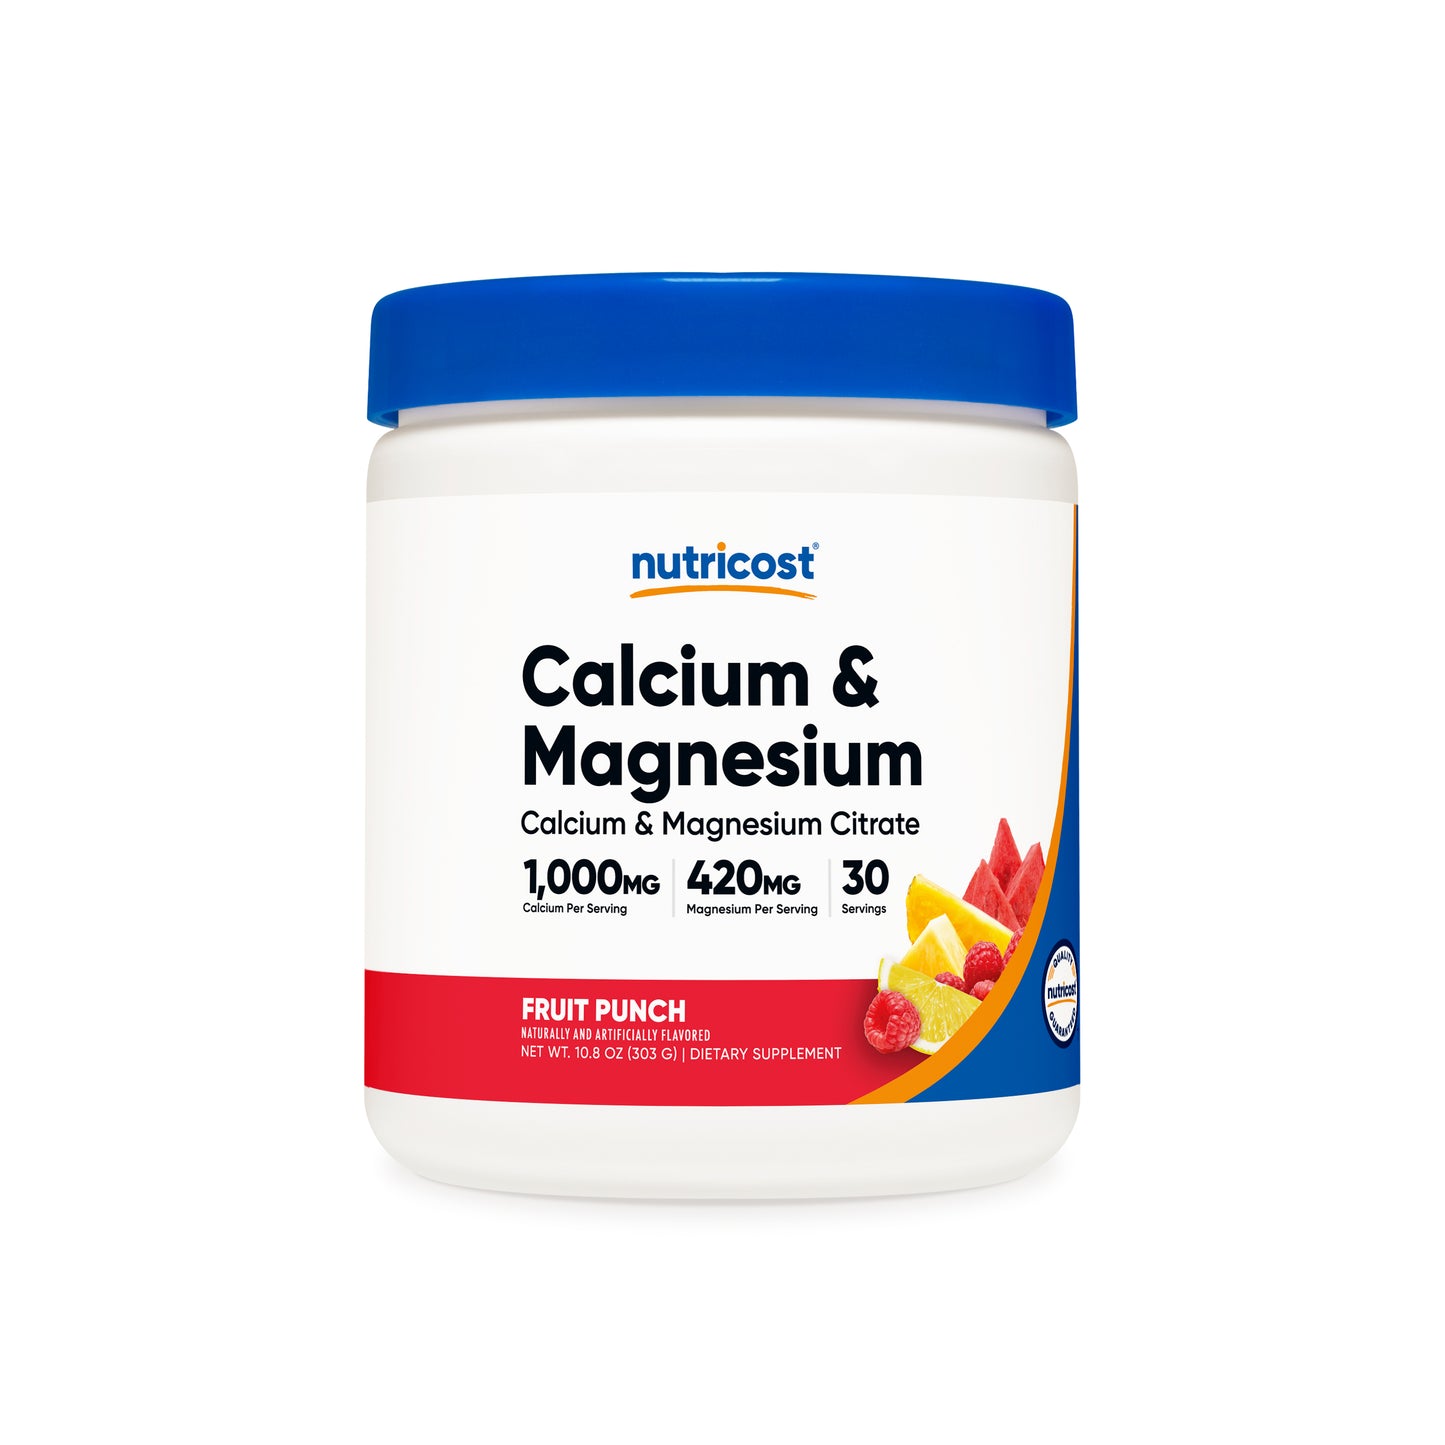 Nutricost Calcium & Magnesium Citrate